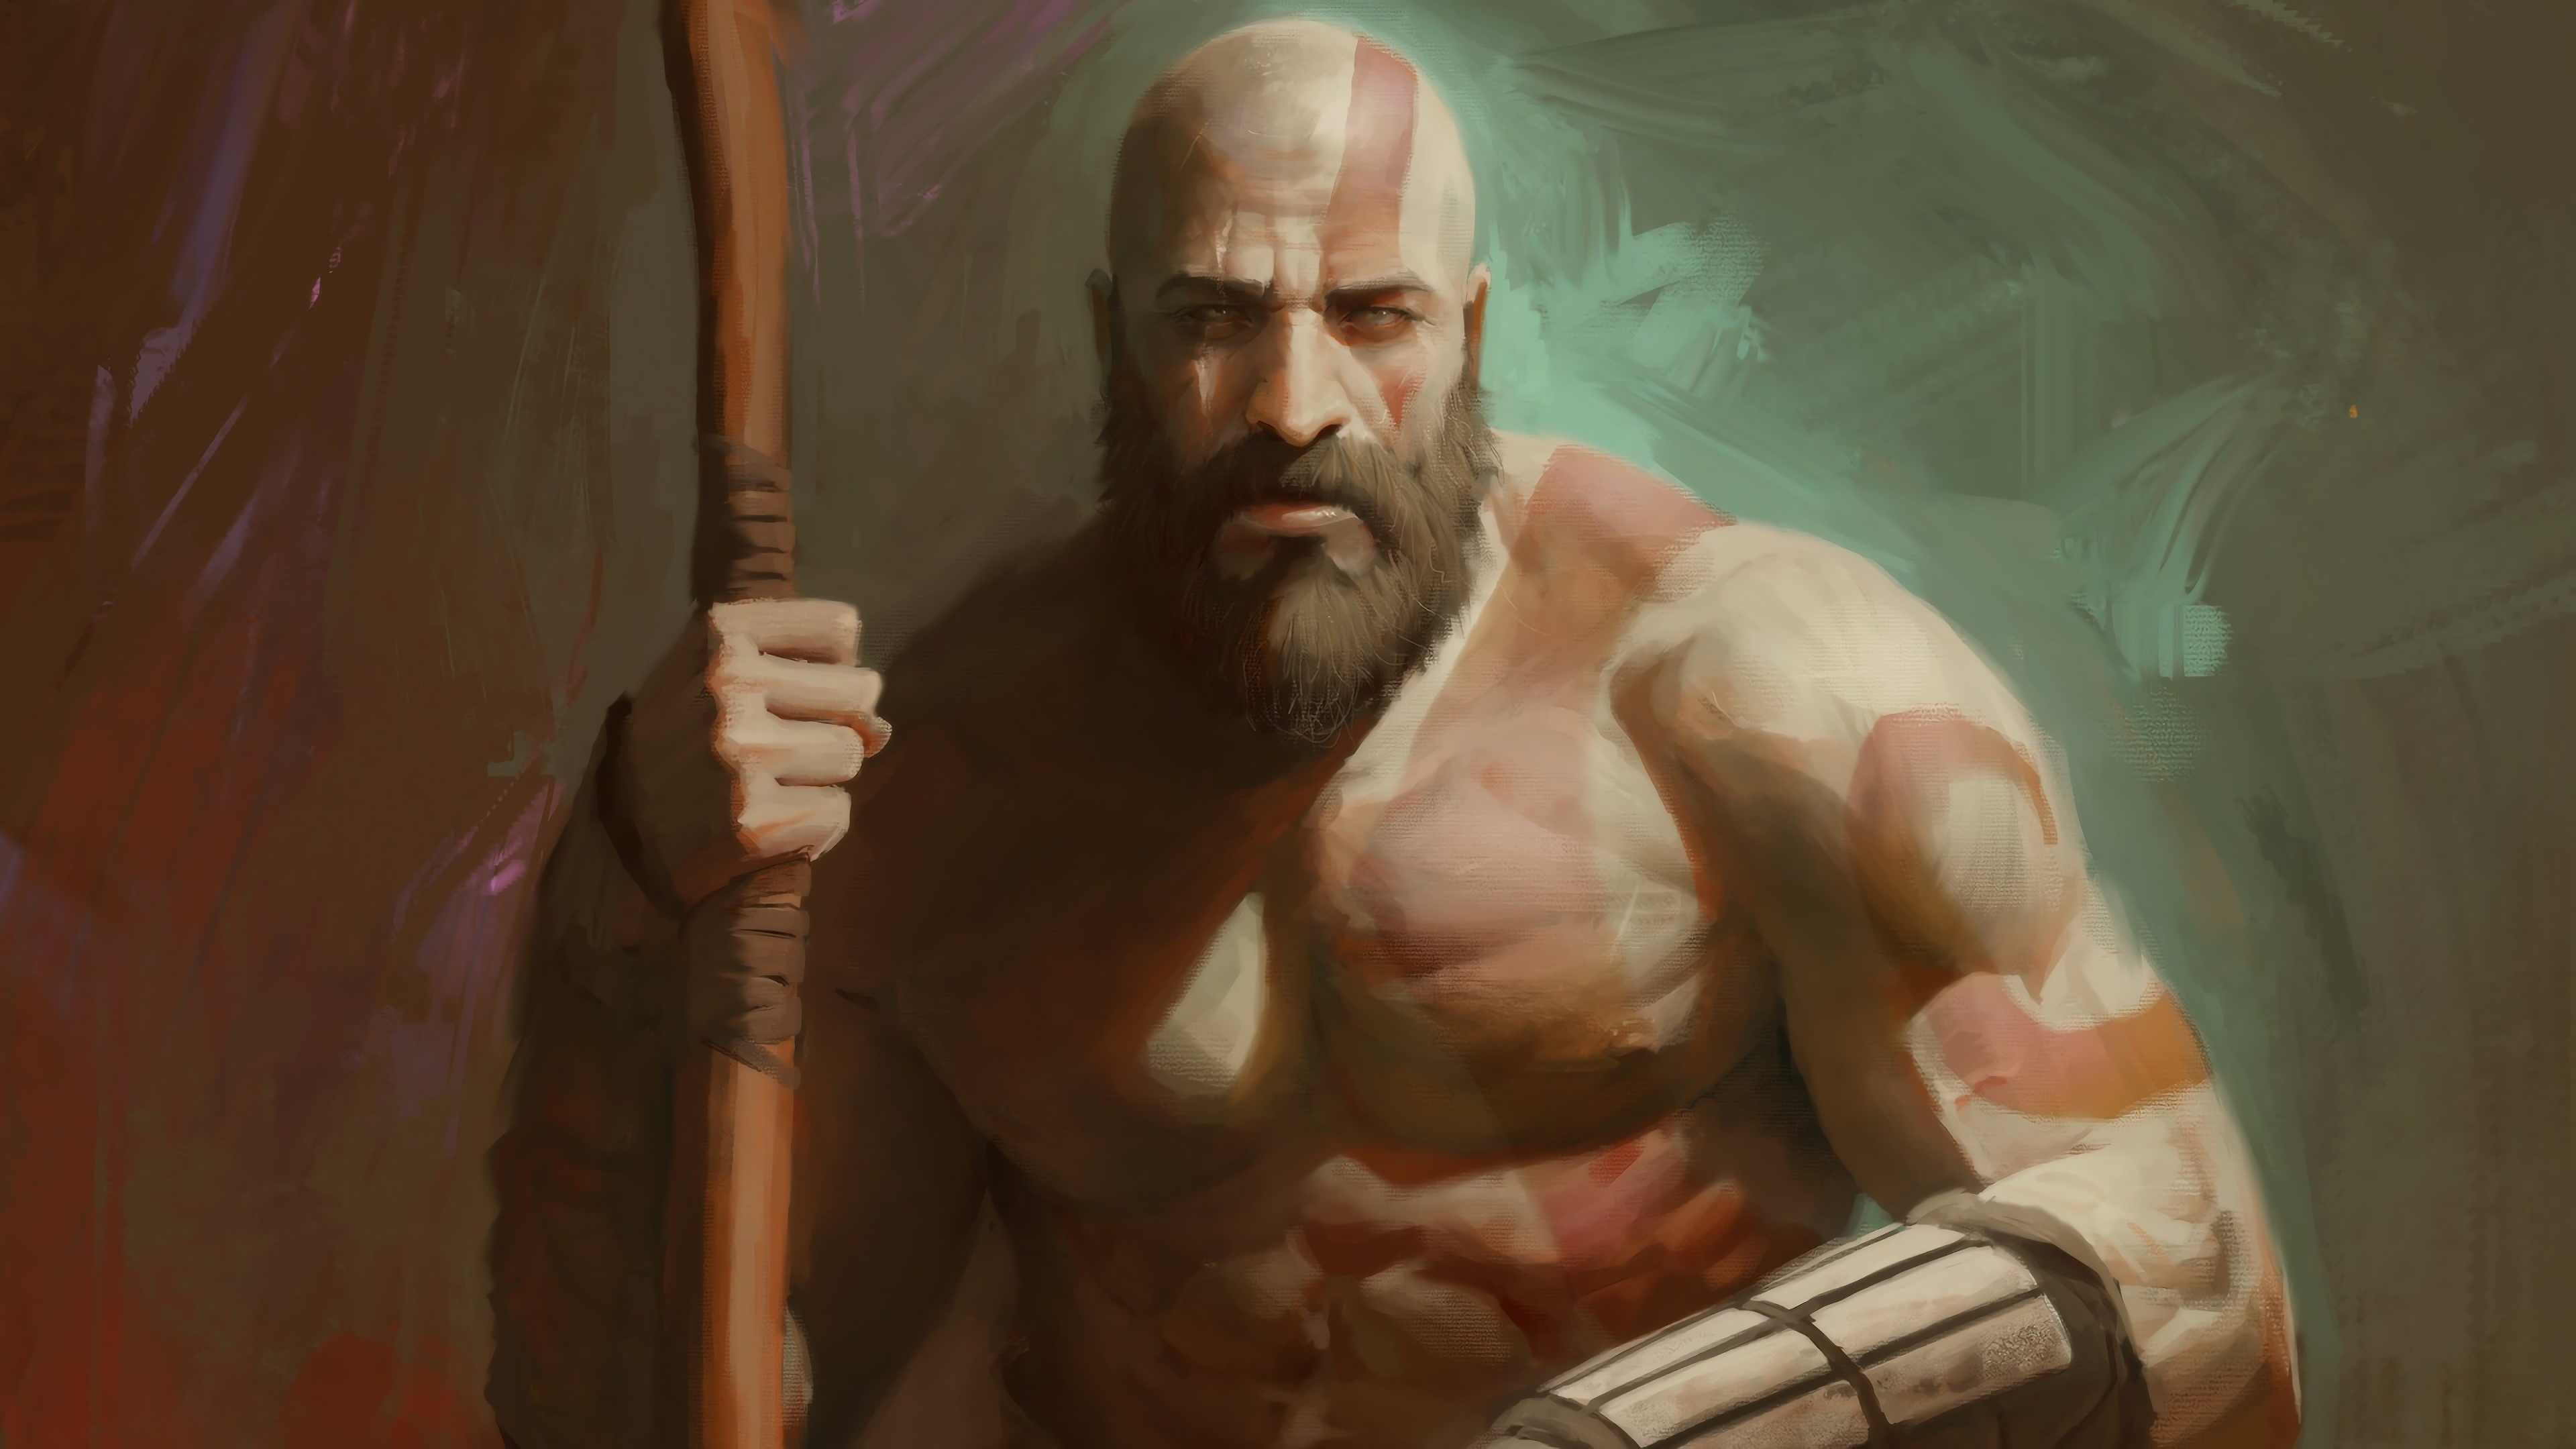 Kratos God Of War Ps4 , HD Wallpaper & Backgrounds